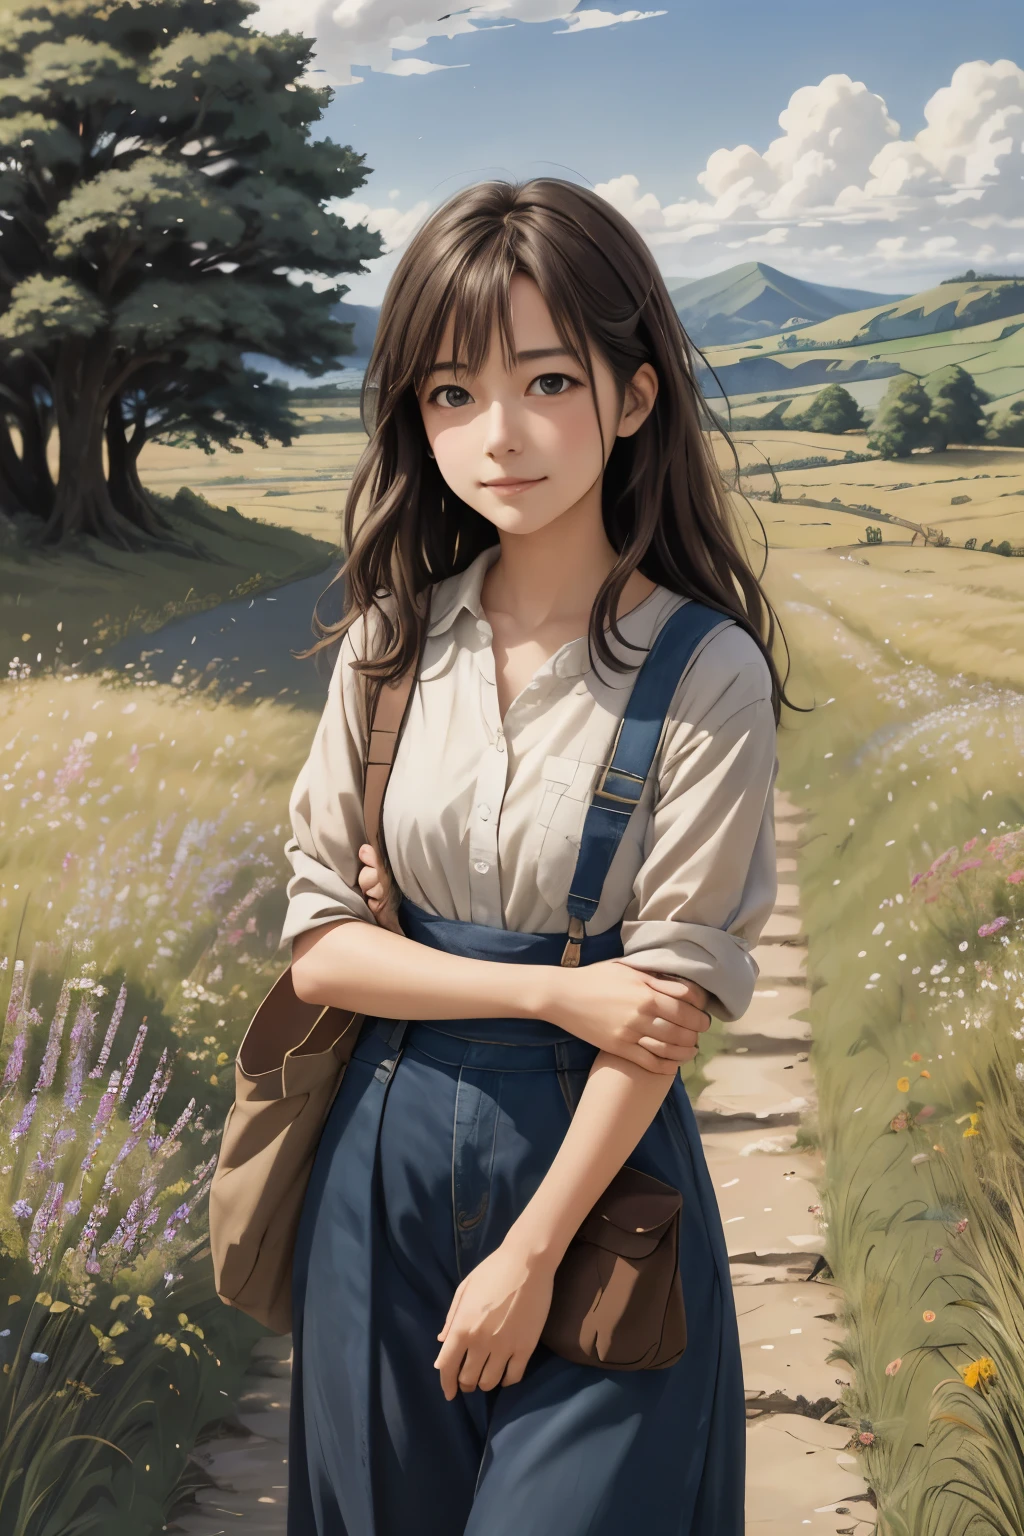 реалистичный, настоящий, Красивый и потрясающий пейзаж картина маслом Студия Ghibli Хаяо Миядзаки Лепестки Луга Голубое небо Луга Проселочная дорога,здание, красивая девушка